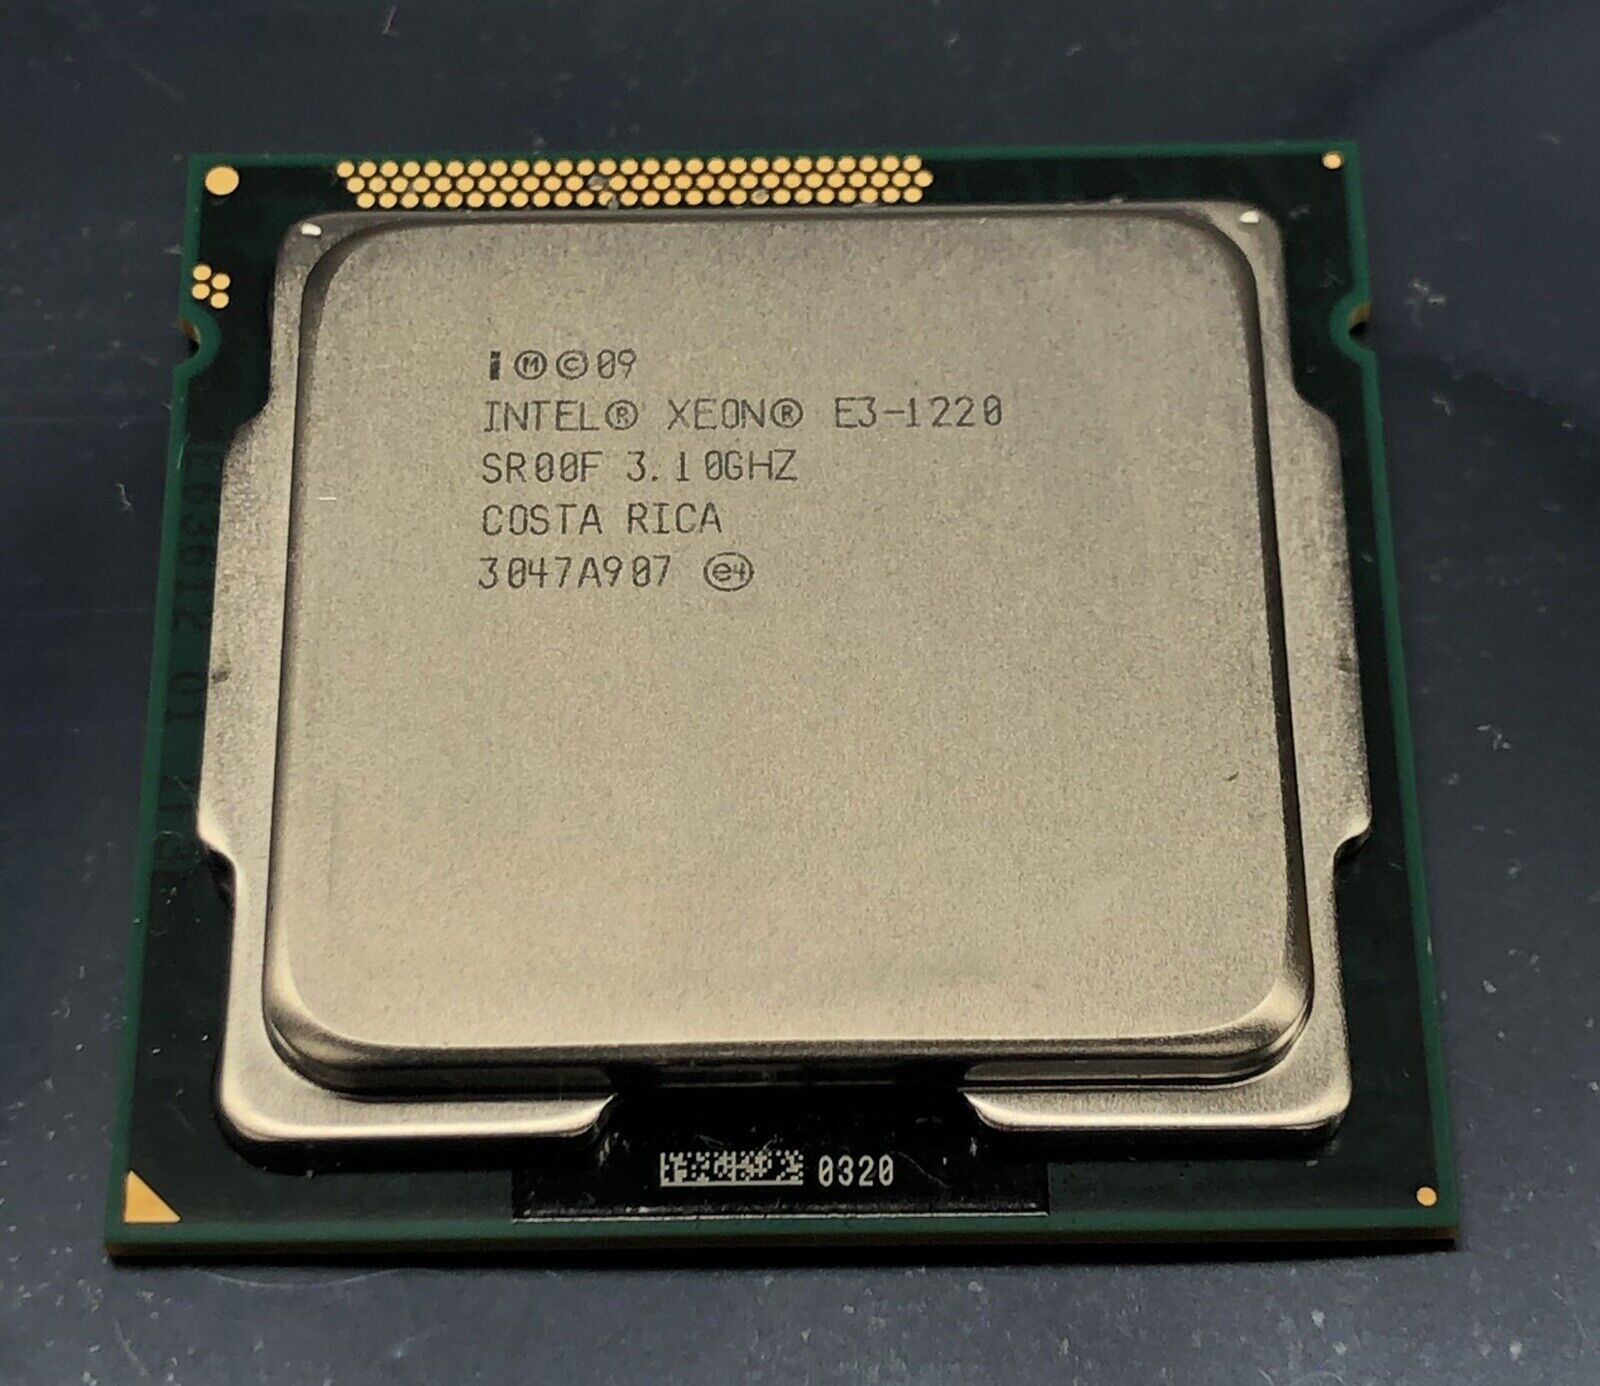 intel Xeon E3-1220 SROOF 3.1GHZ Quad-Core Processor